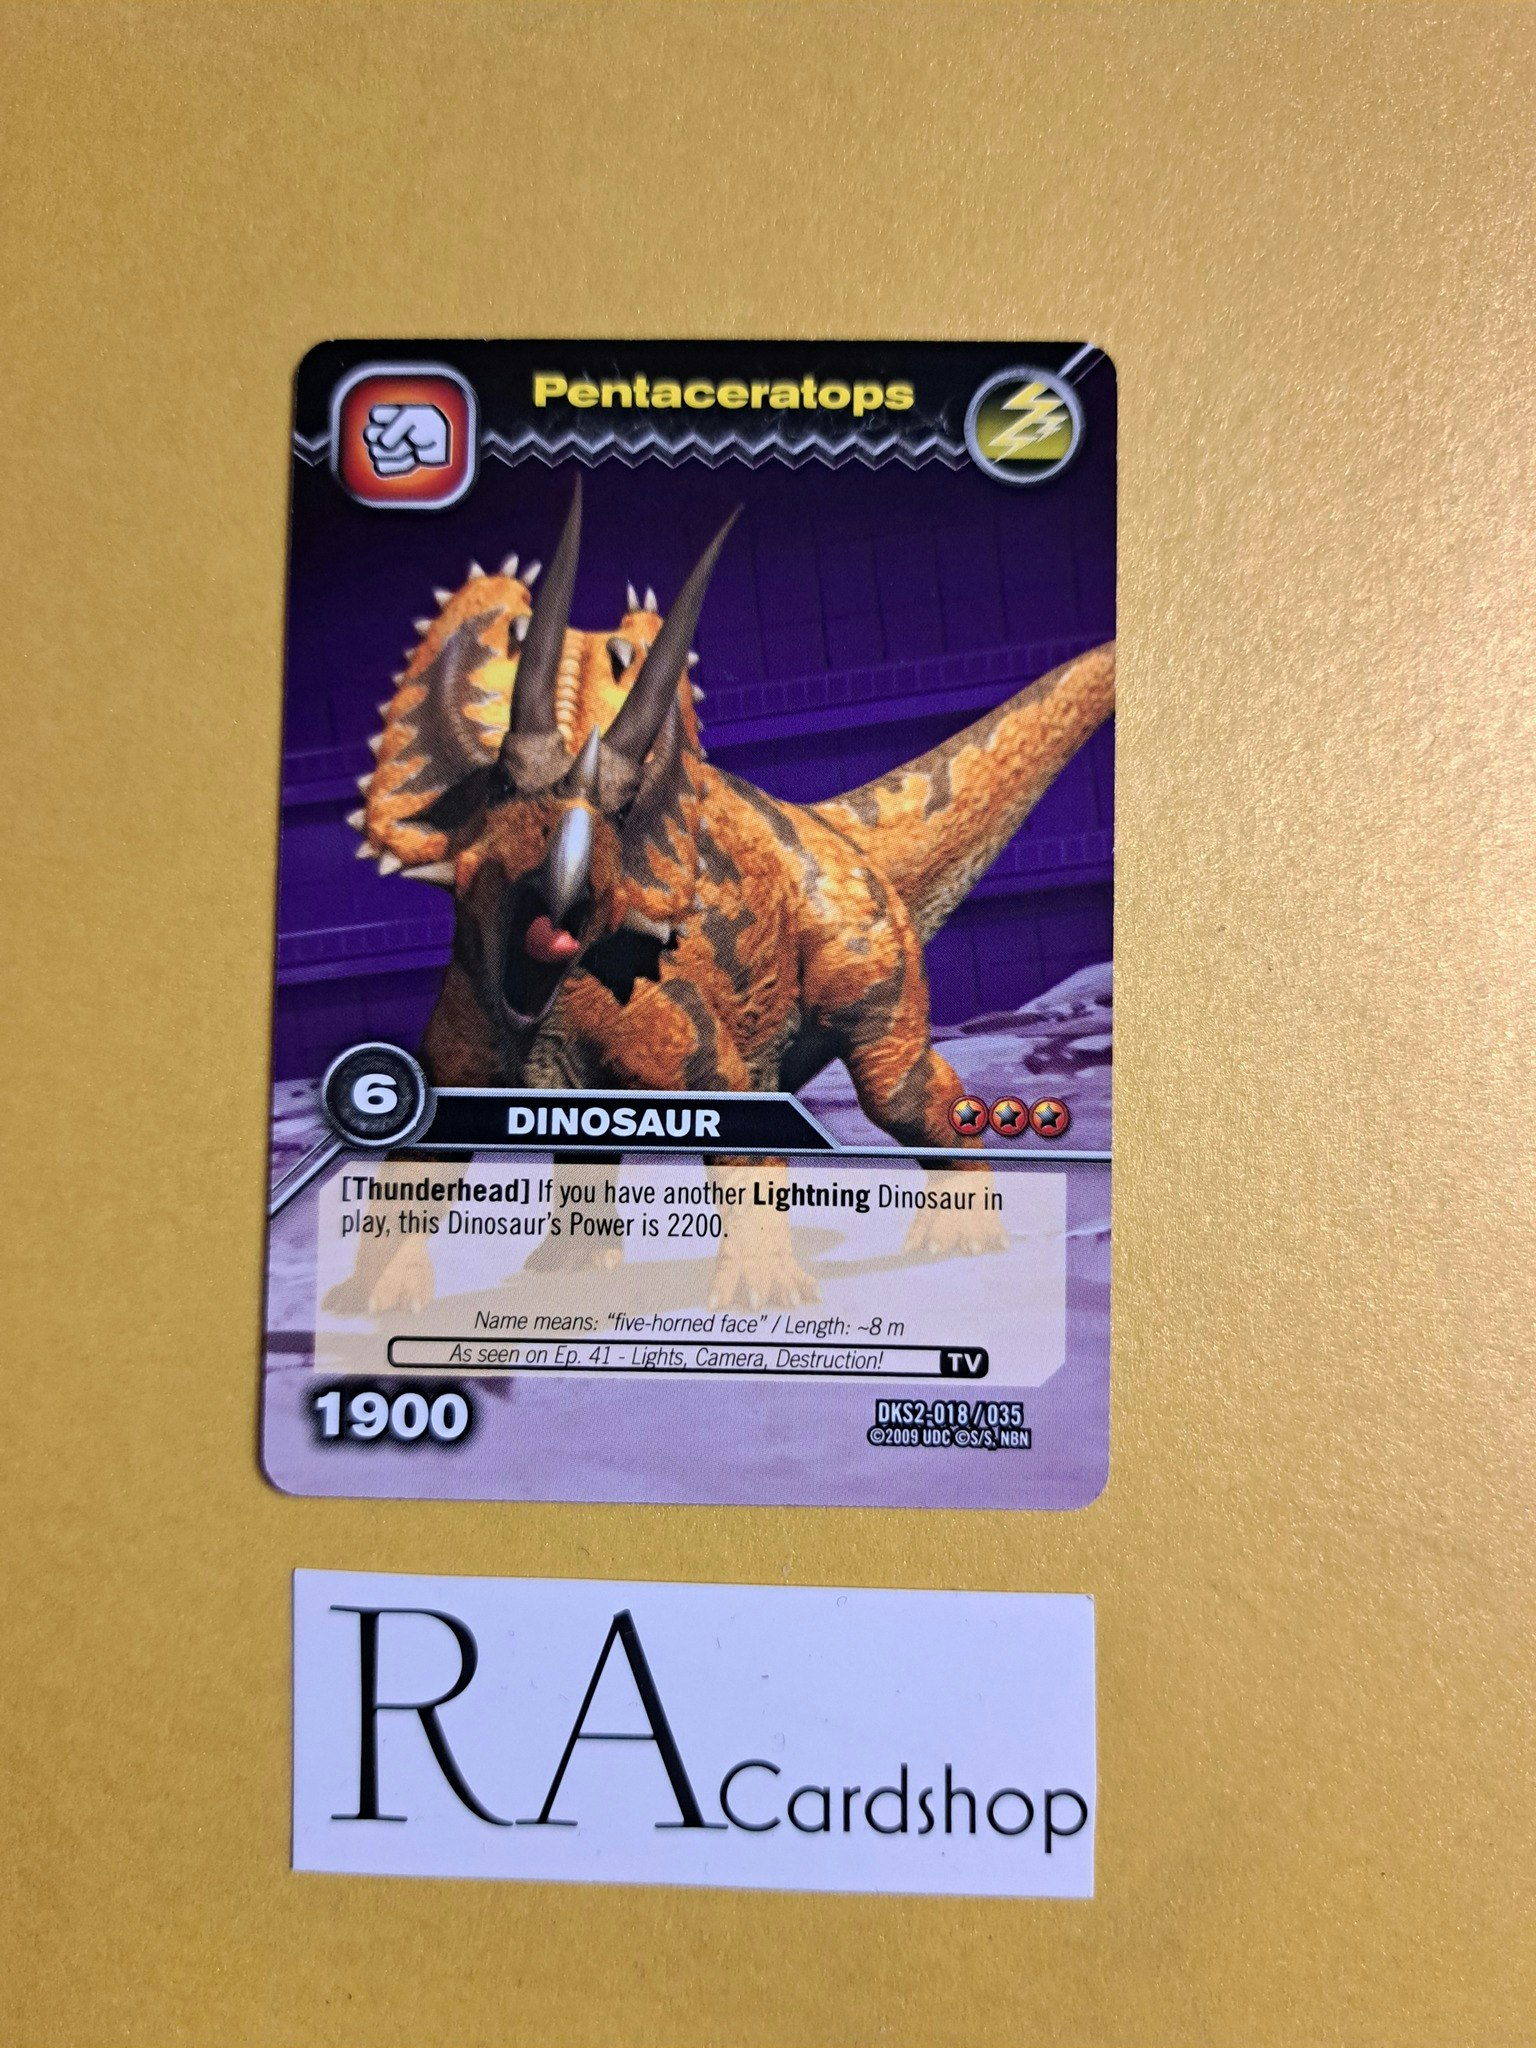 Pentaceratops DKS2-018/035 Dinosaur King